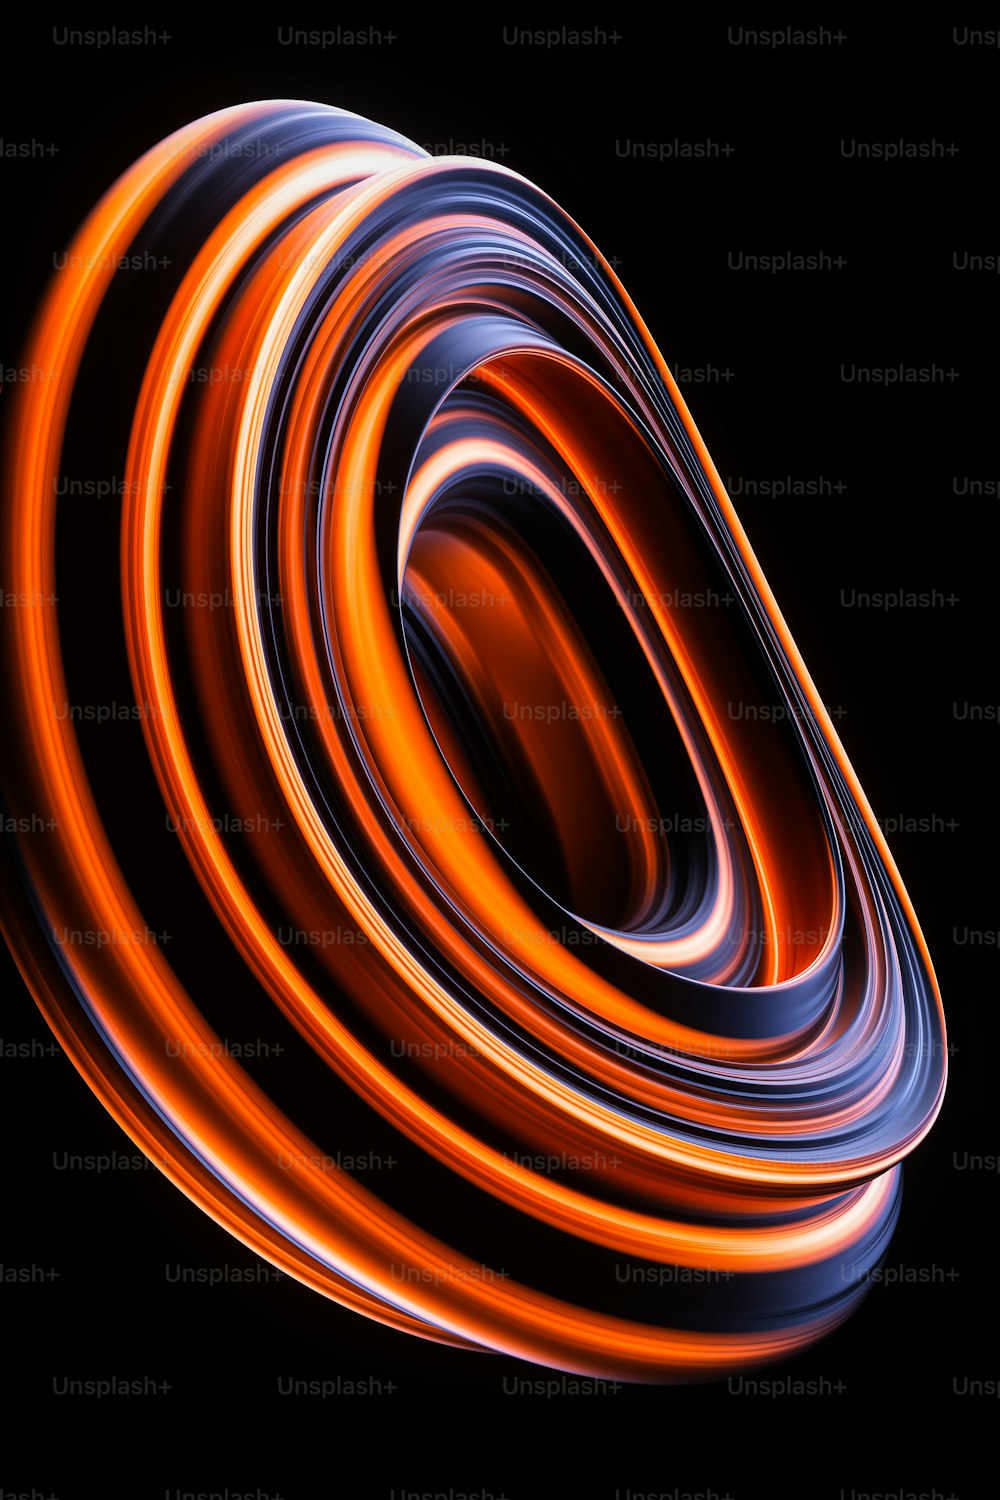 ein schwarzer Hintergrund mit orangefarbenen und blauen Wirbeln